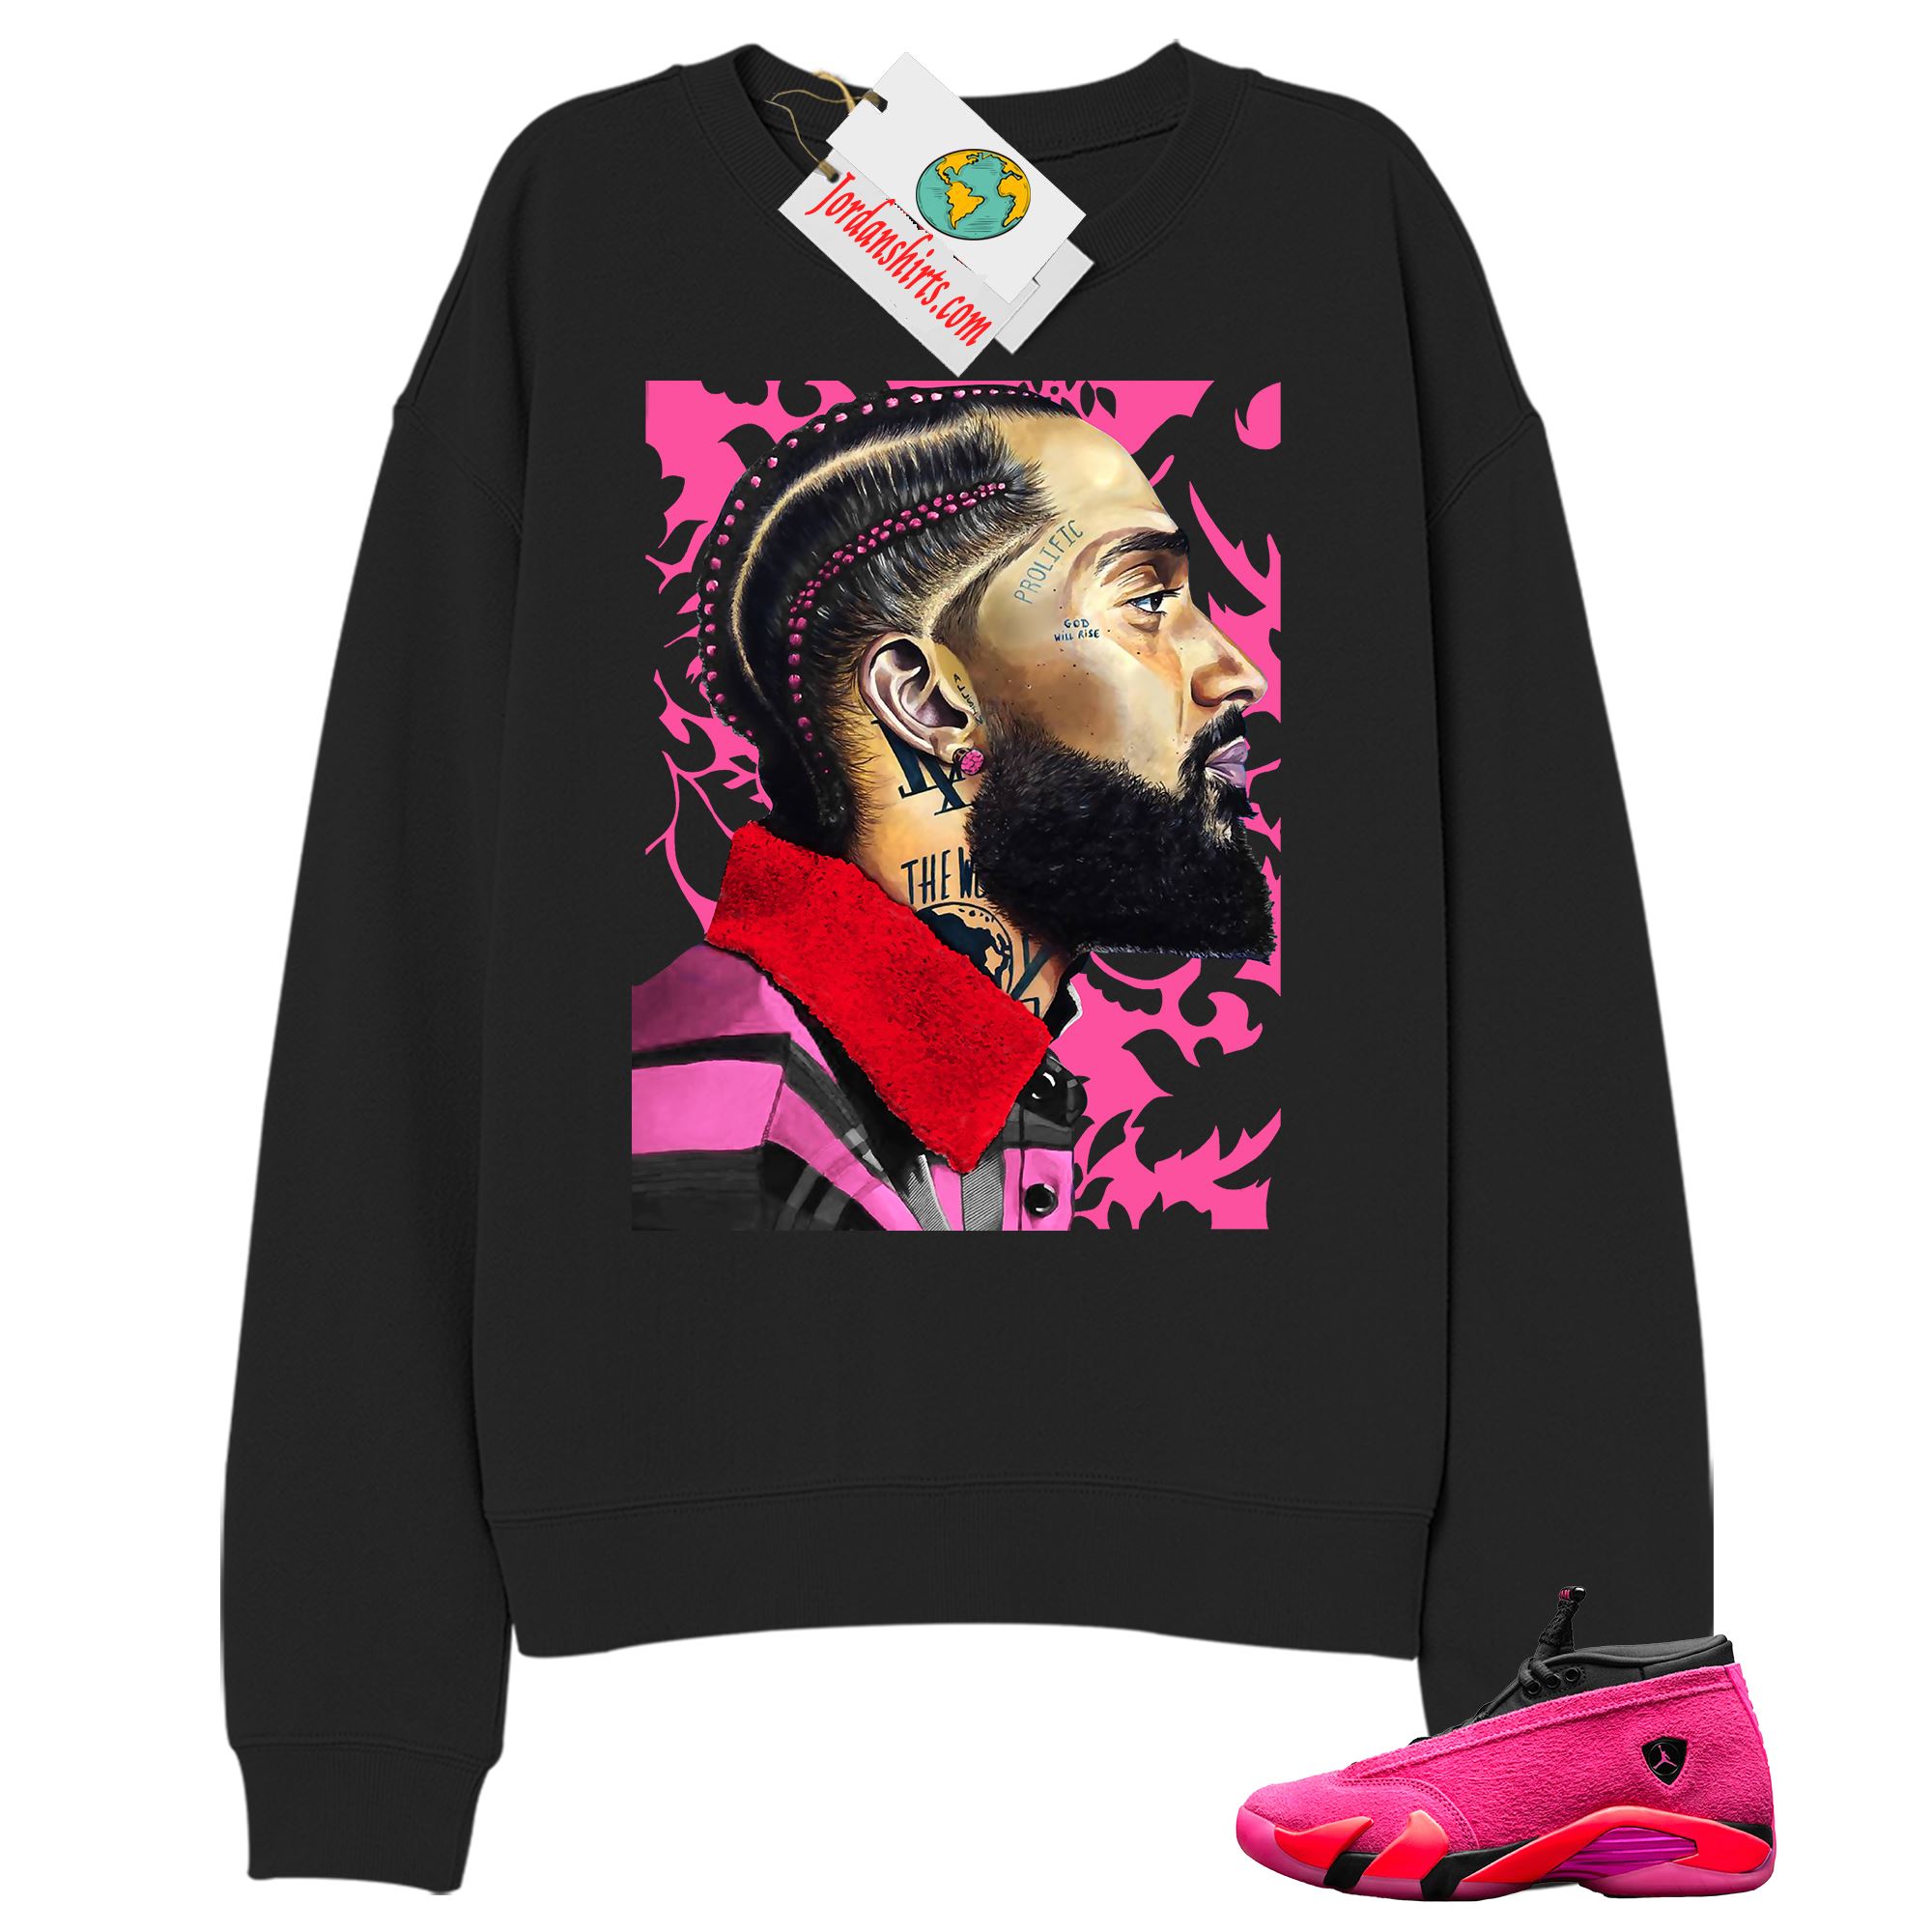 Jordan 14 Sweatshirt, Nipsey Hussle Black Sweatshirt Air Jordan 14 Wmns Shocking Pink 14s Plus Size Up To 5xl